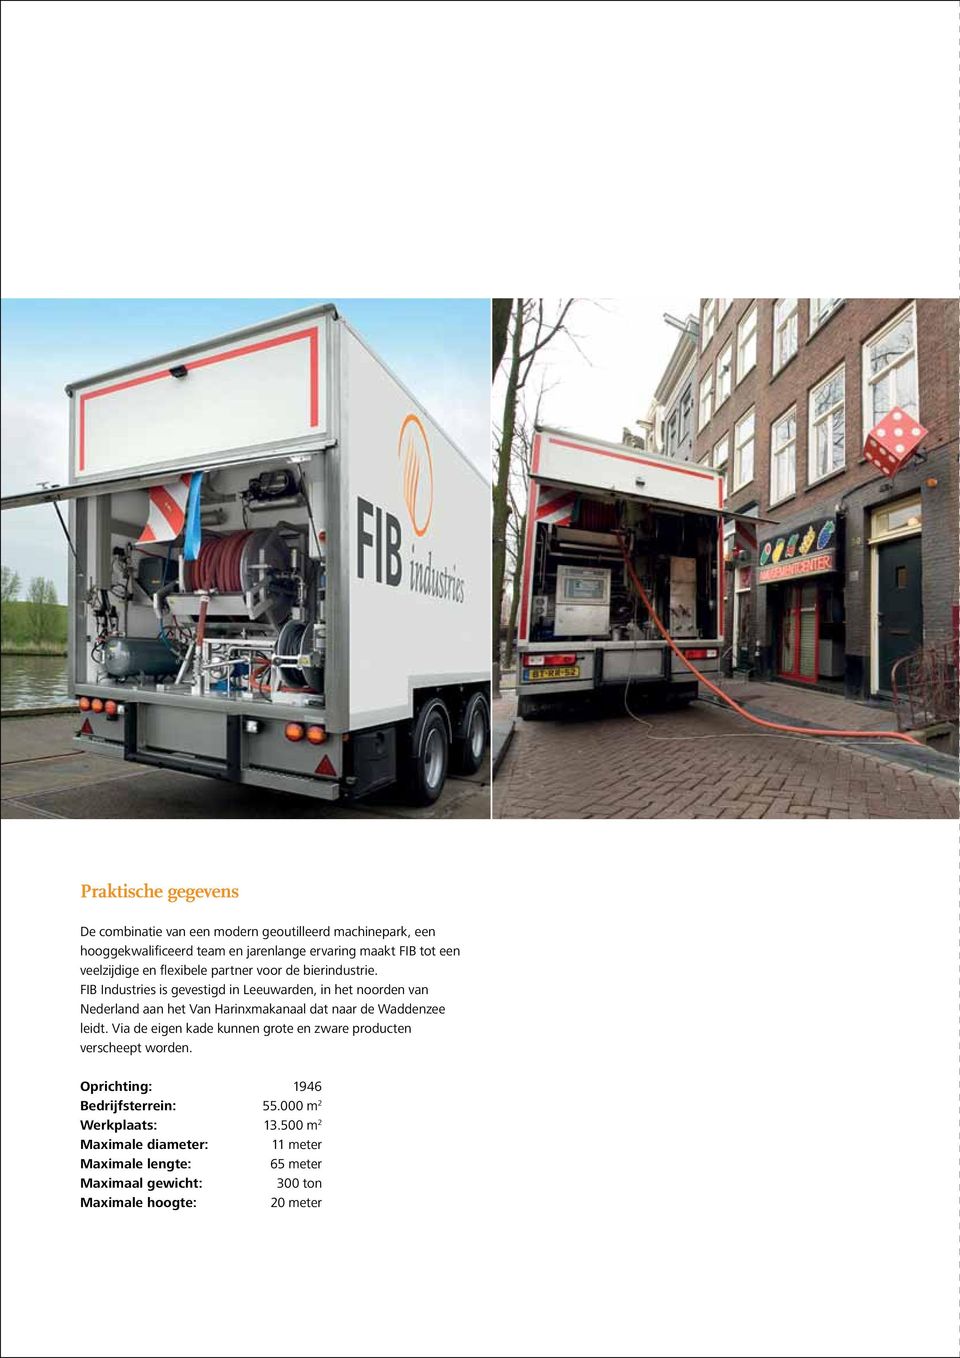 FIB Industries is gevestigd in Leeuwarden, in het noorden van Nederland aan het Van Harinxmakanaal dat naar de Waddenzee leidt.